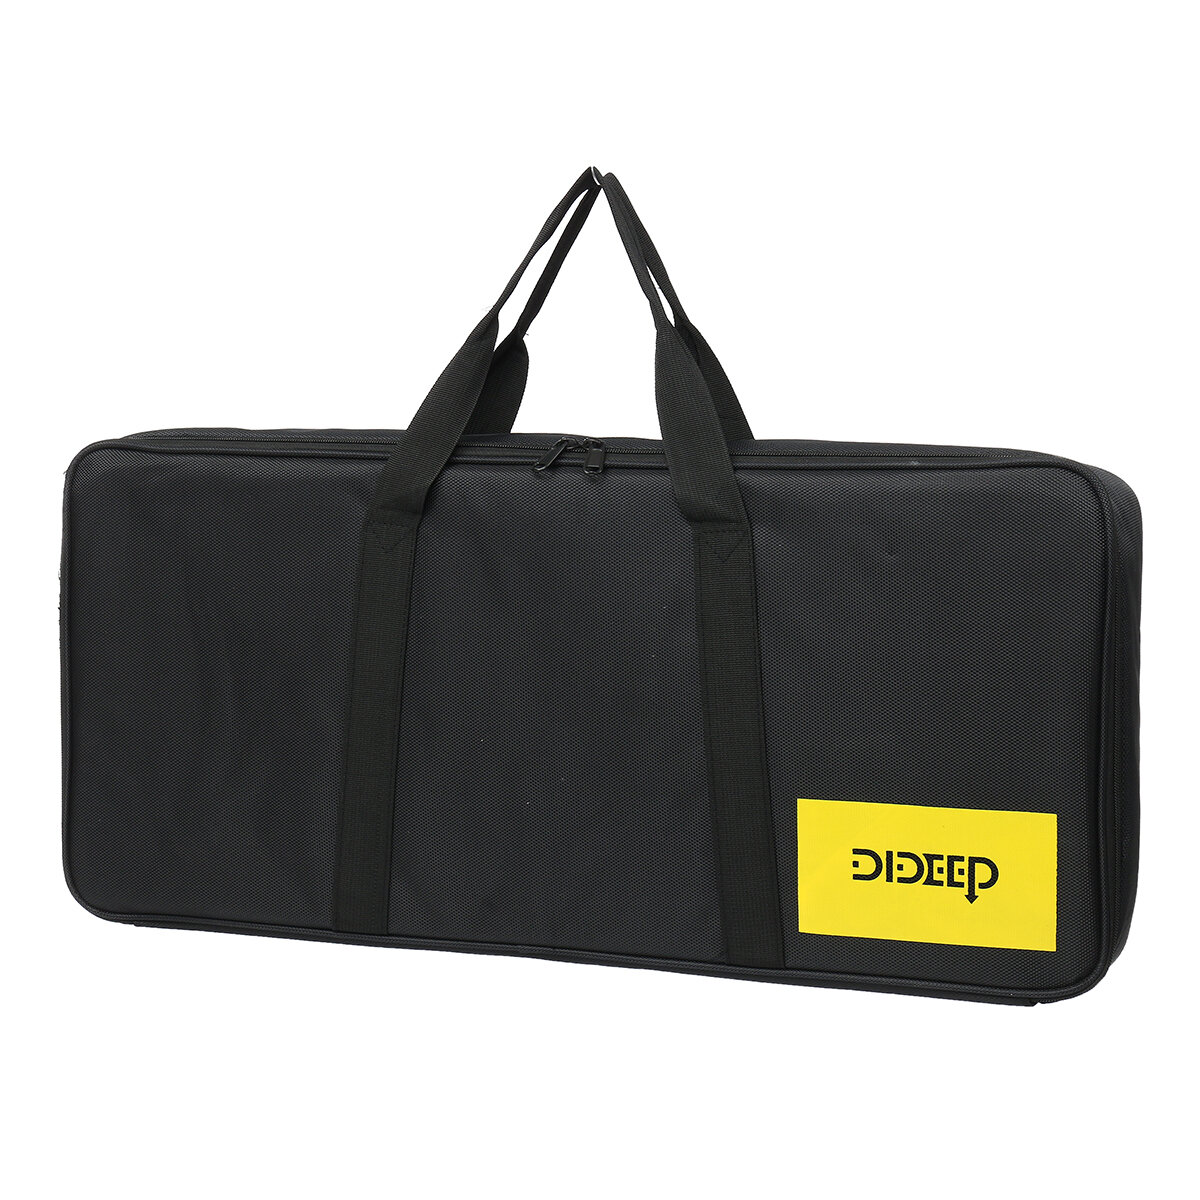 DIDEEP 1L Diving Storage Bag Multifunction Waterproof Underwater Diving Supplies Handbag